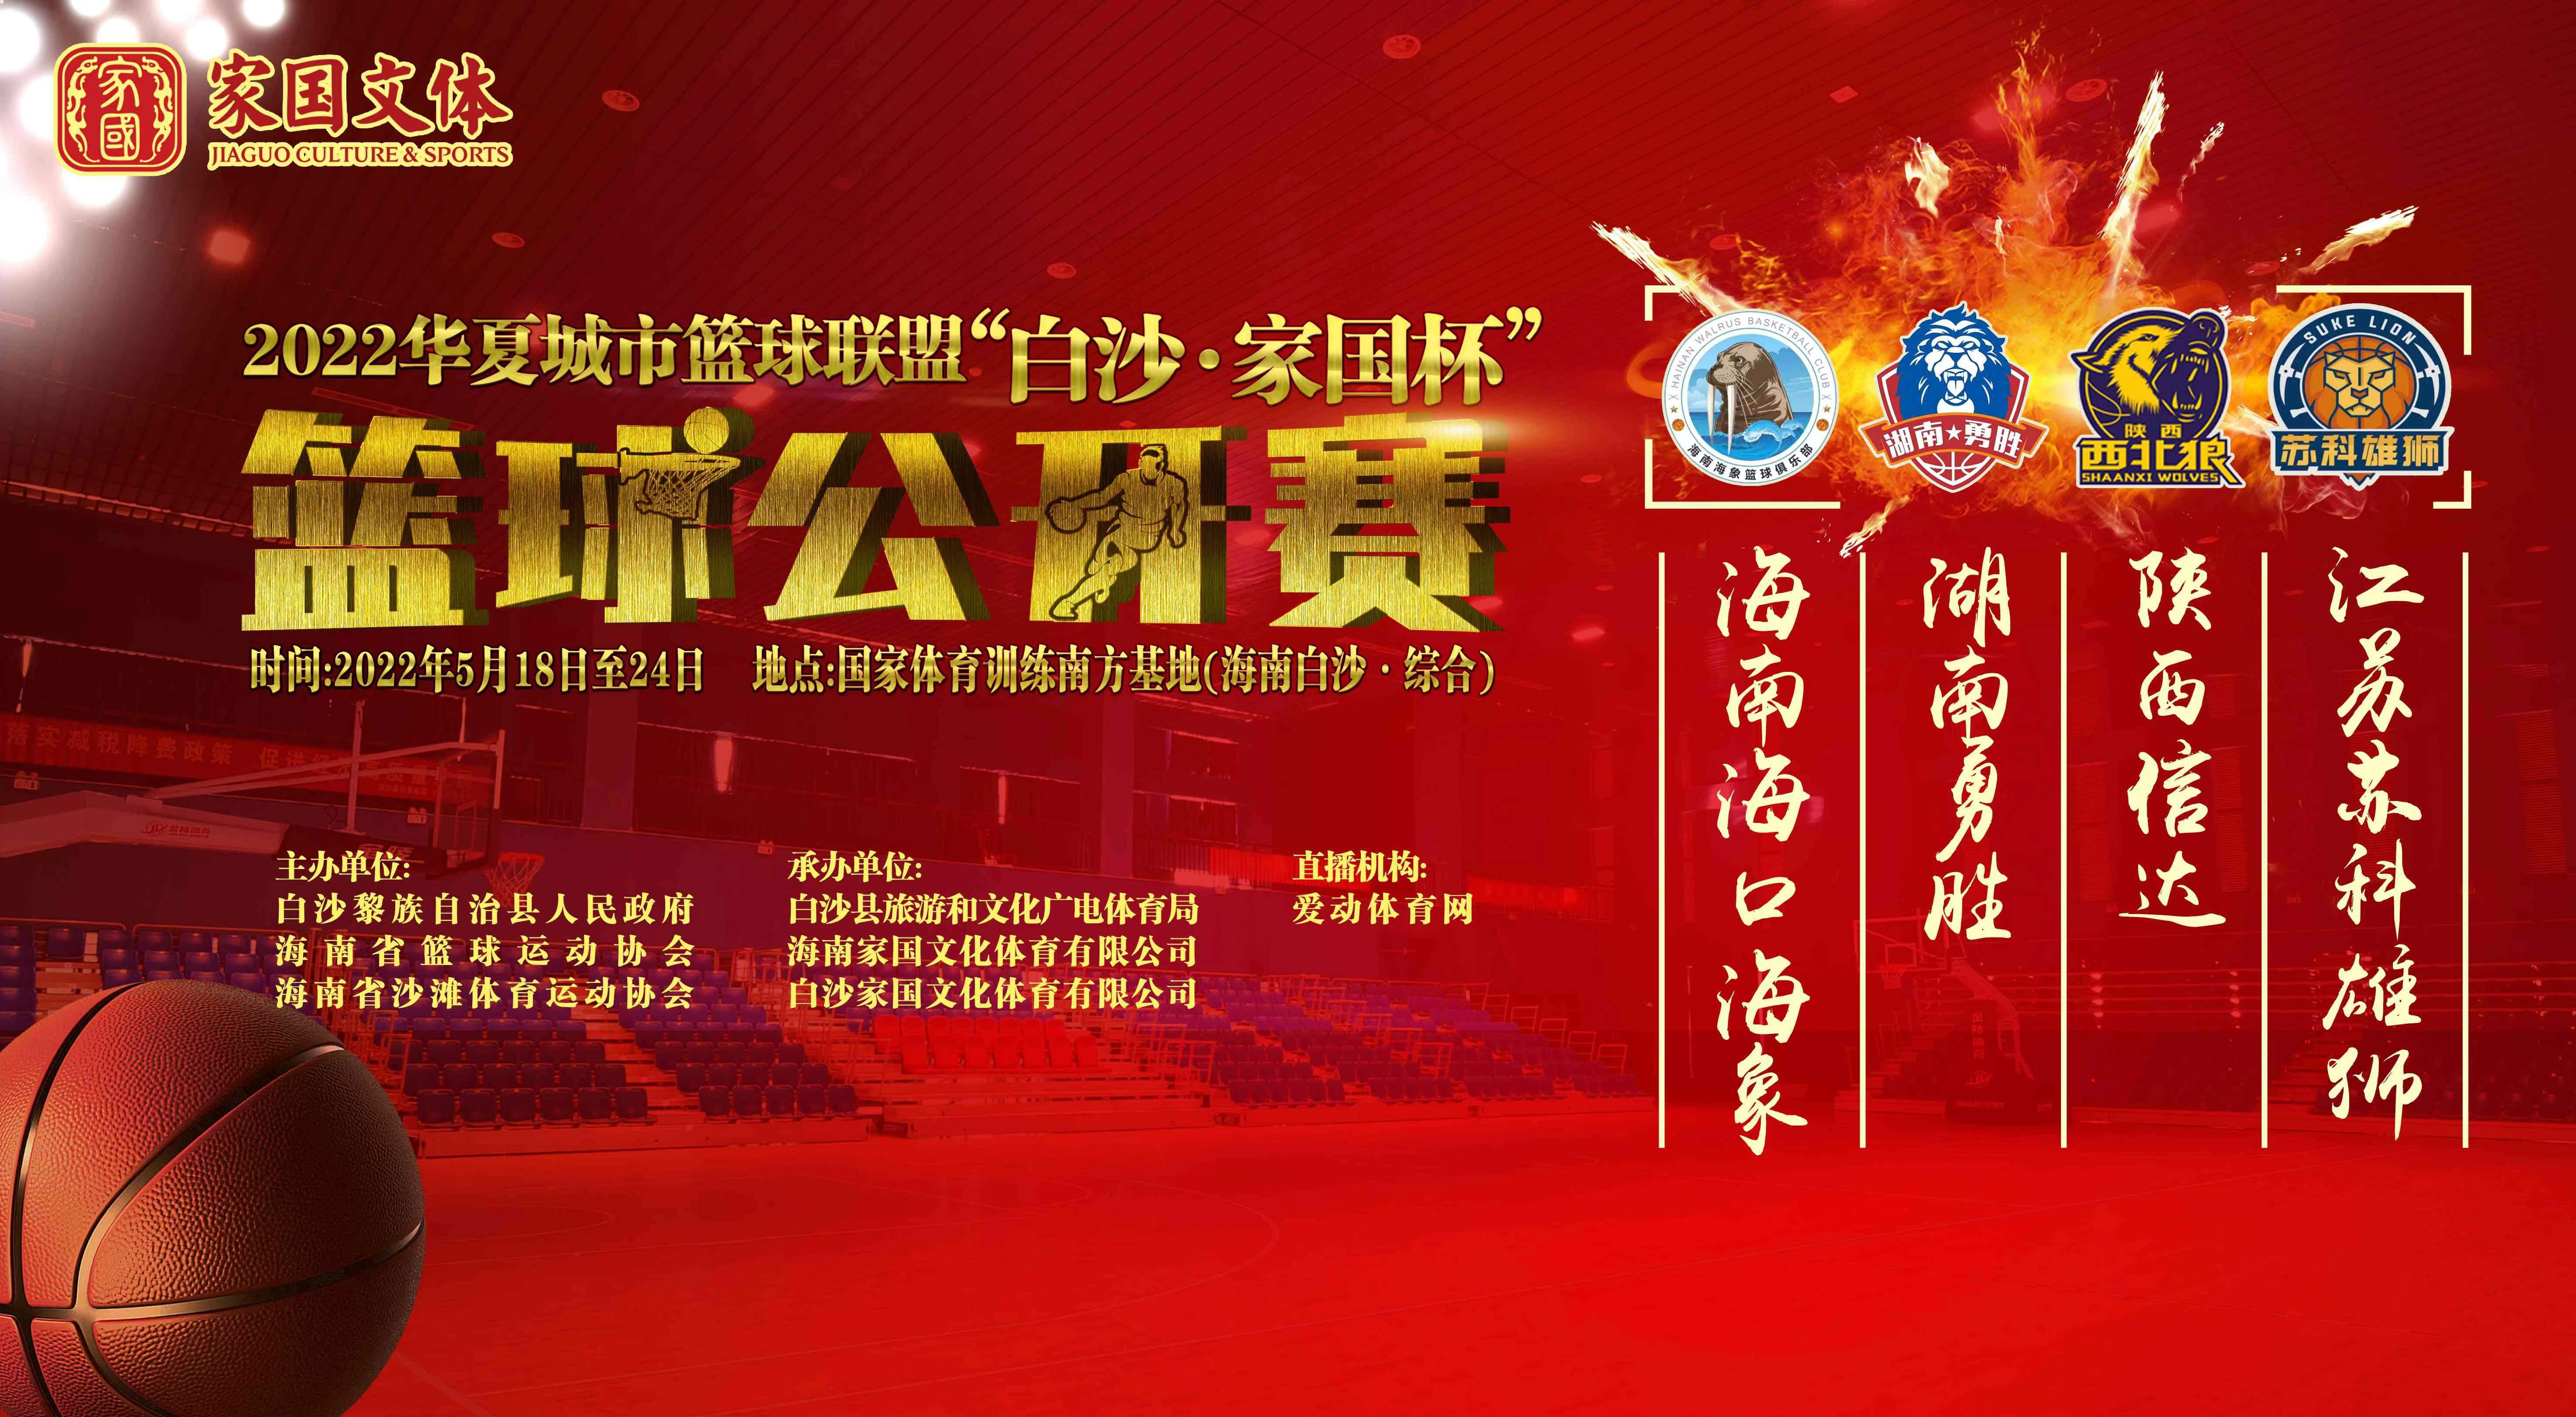 2022华夏城市篮球联盟“白沙·家国杯”篮球公开赛 5月22日